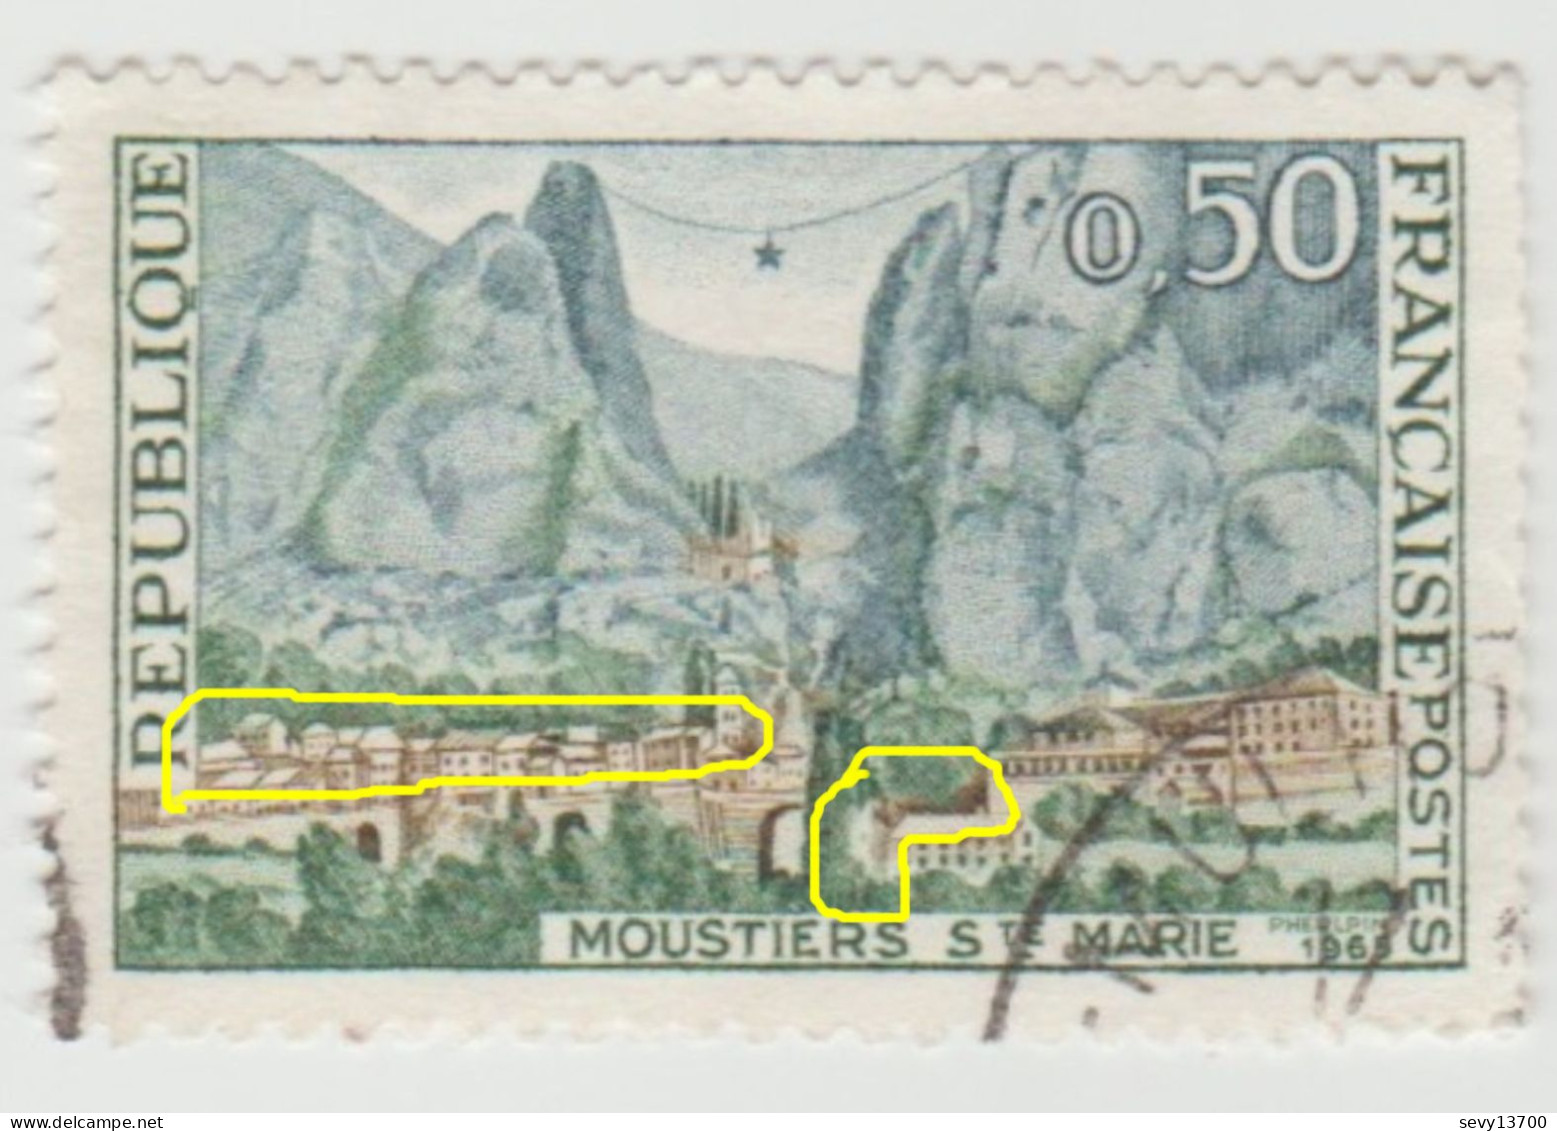 France 1965 4 Timbres YT N° 1436 2 Neufs 2 Oblitérés- Ouverture Dissimulée, Ouverture Claire, Blanc Dans Le Cyprès - Unused Stamps